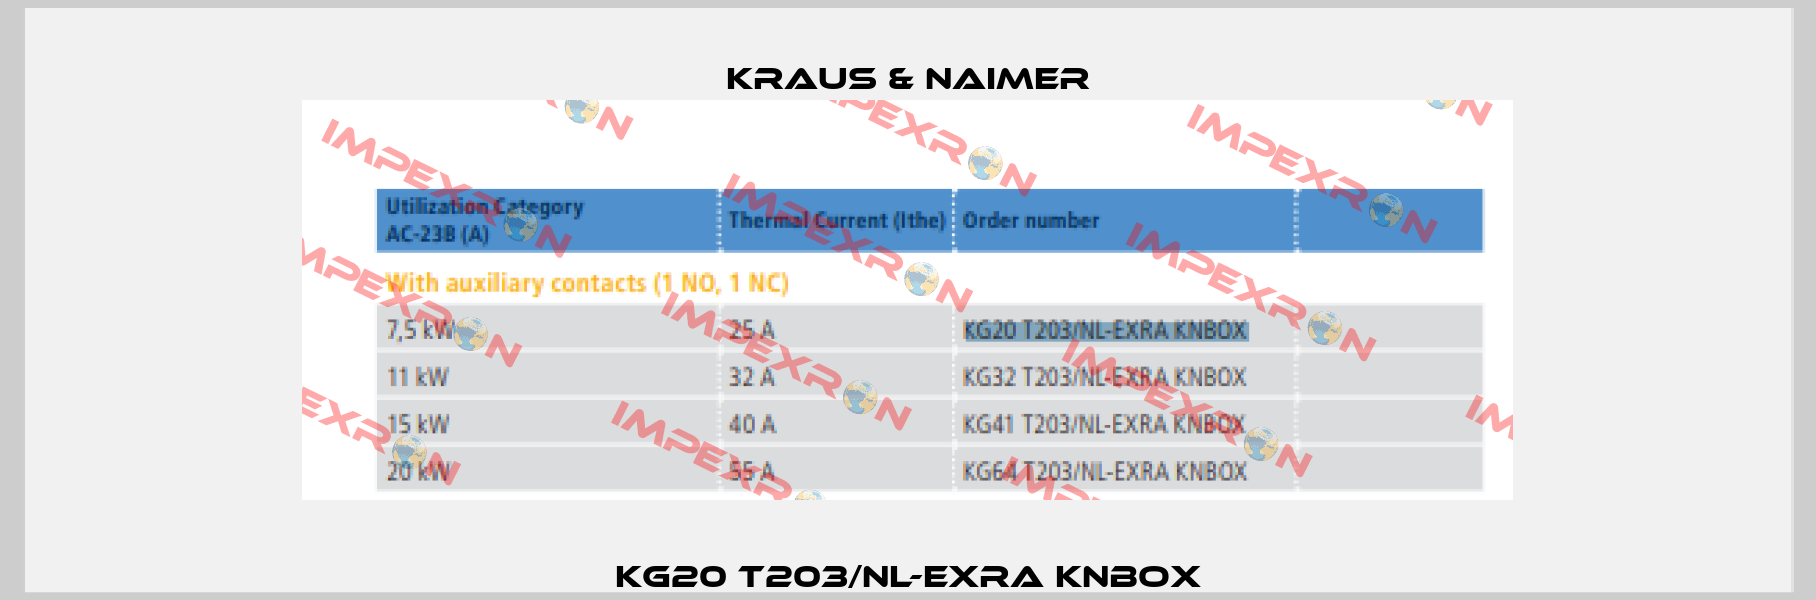 KG20 T203/NL-EXRA KNBOX Kraus & Naimer